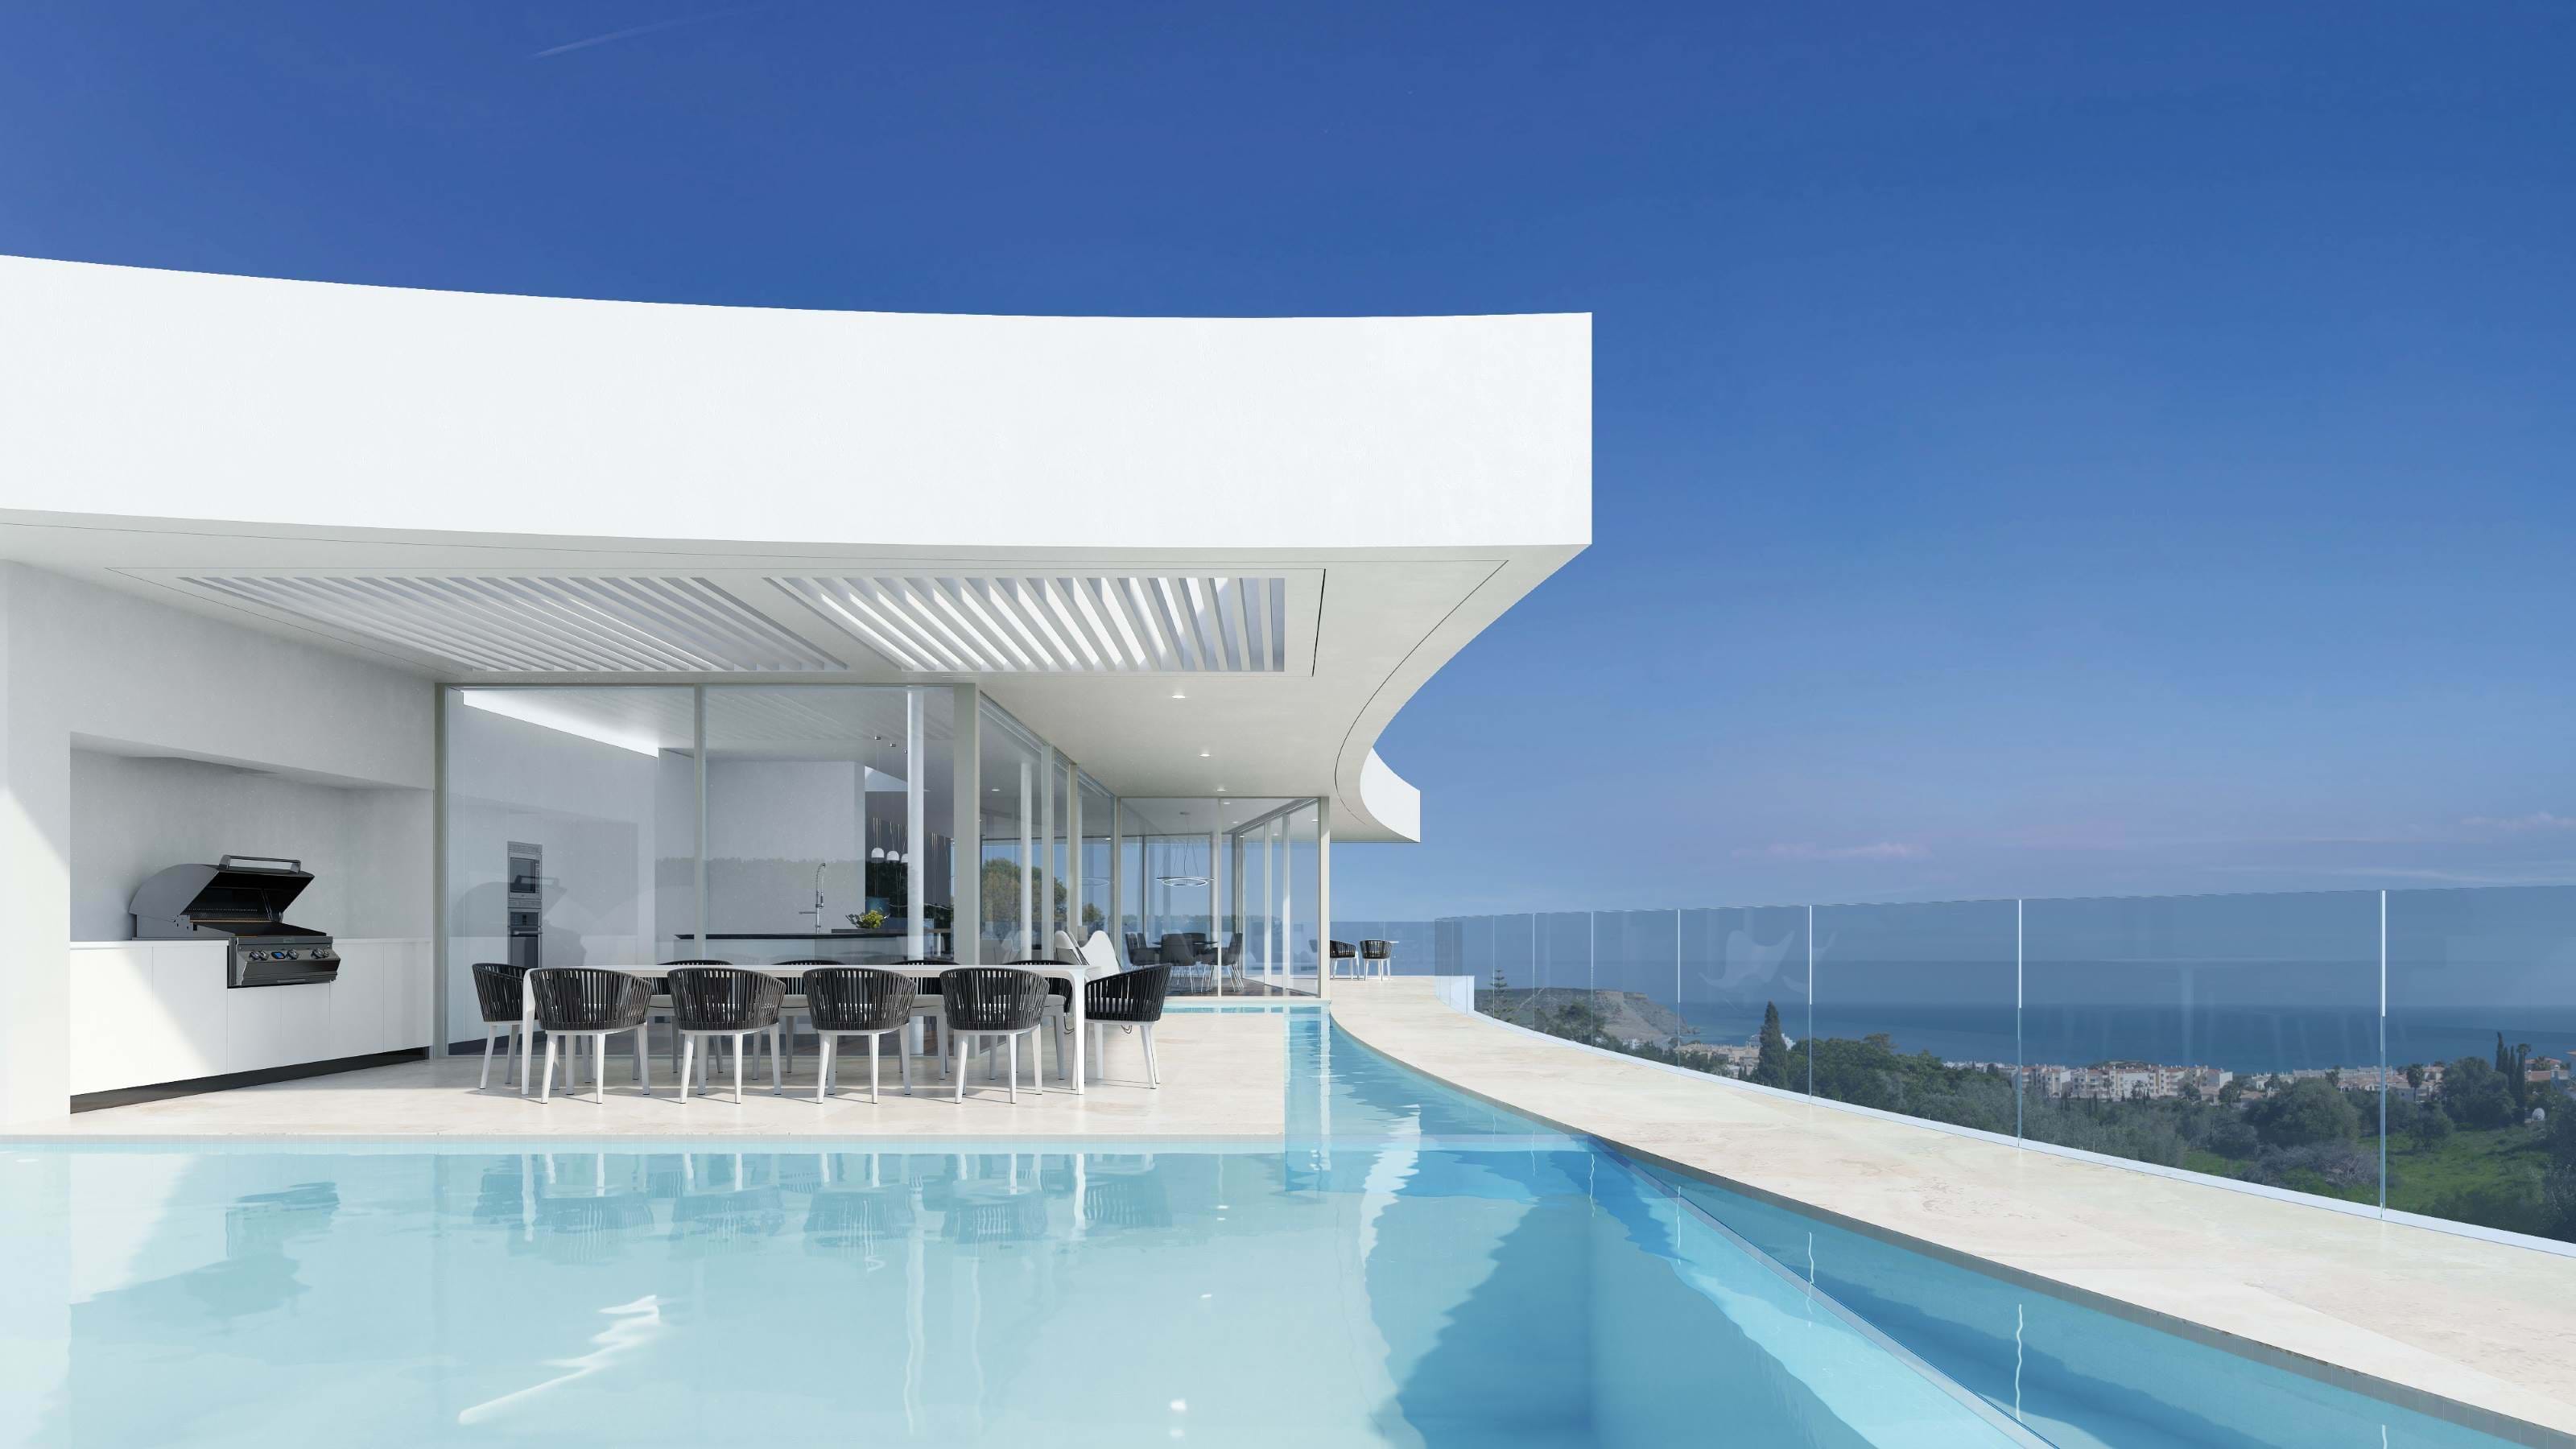 Villa with swimming pool, jacuzzi and sea view in Praia da Luz